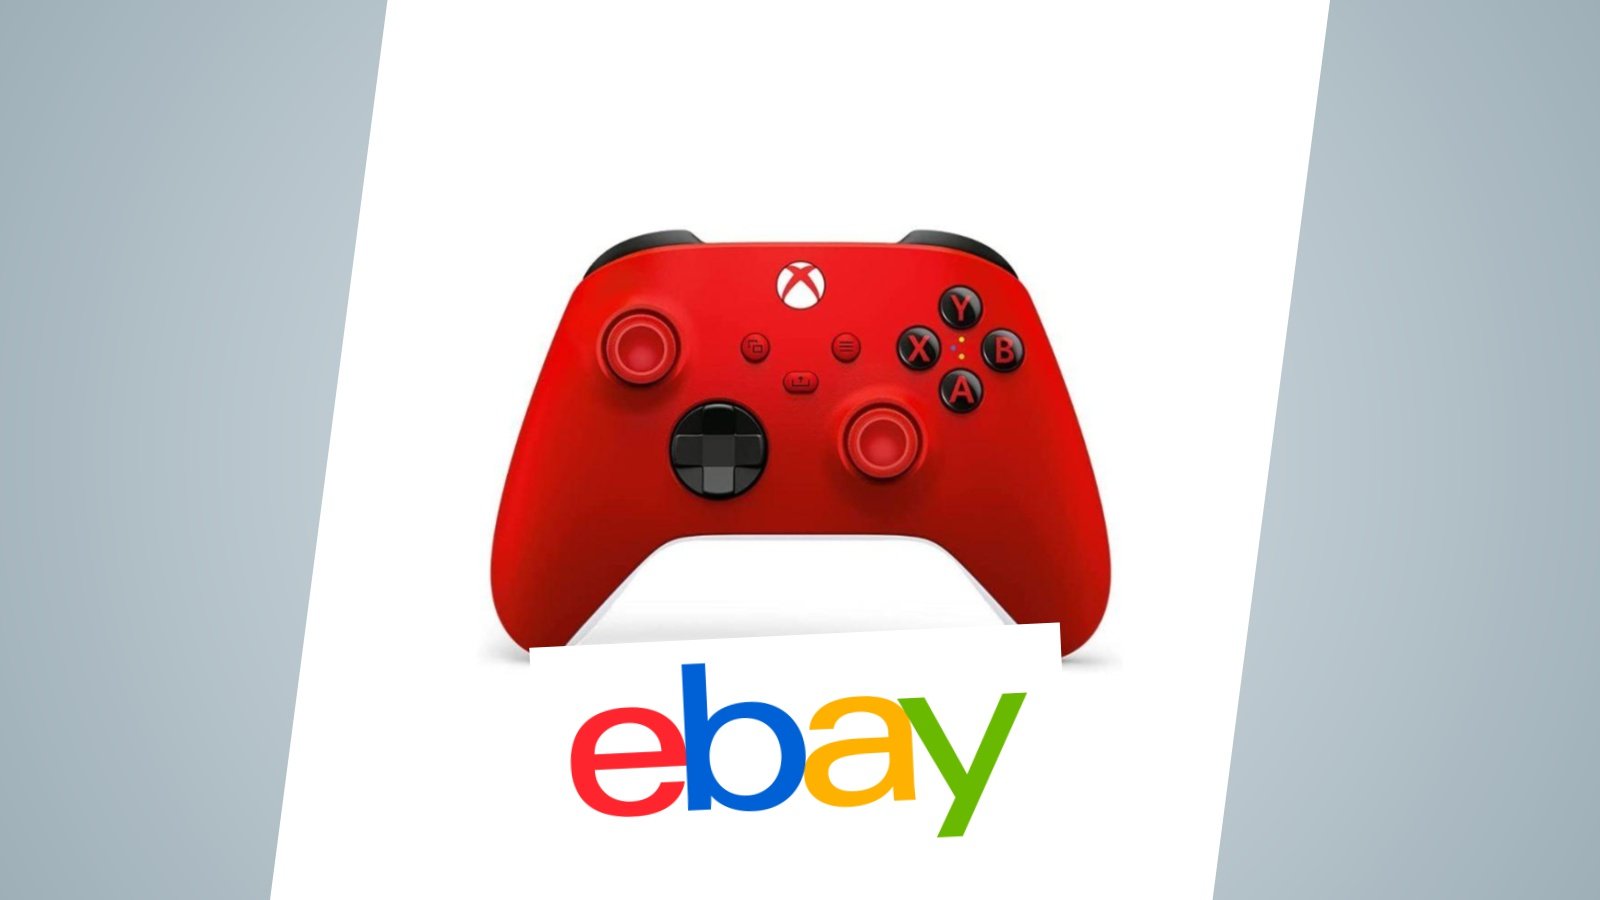 Offerte eBay: controller Xbox rosso in sconto, compatibile con PC, mobile e Xbox